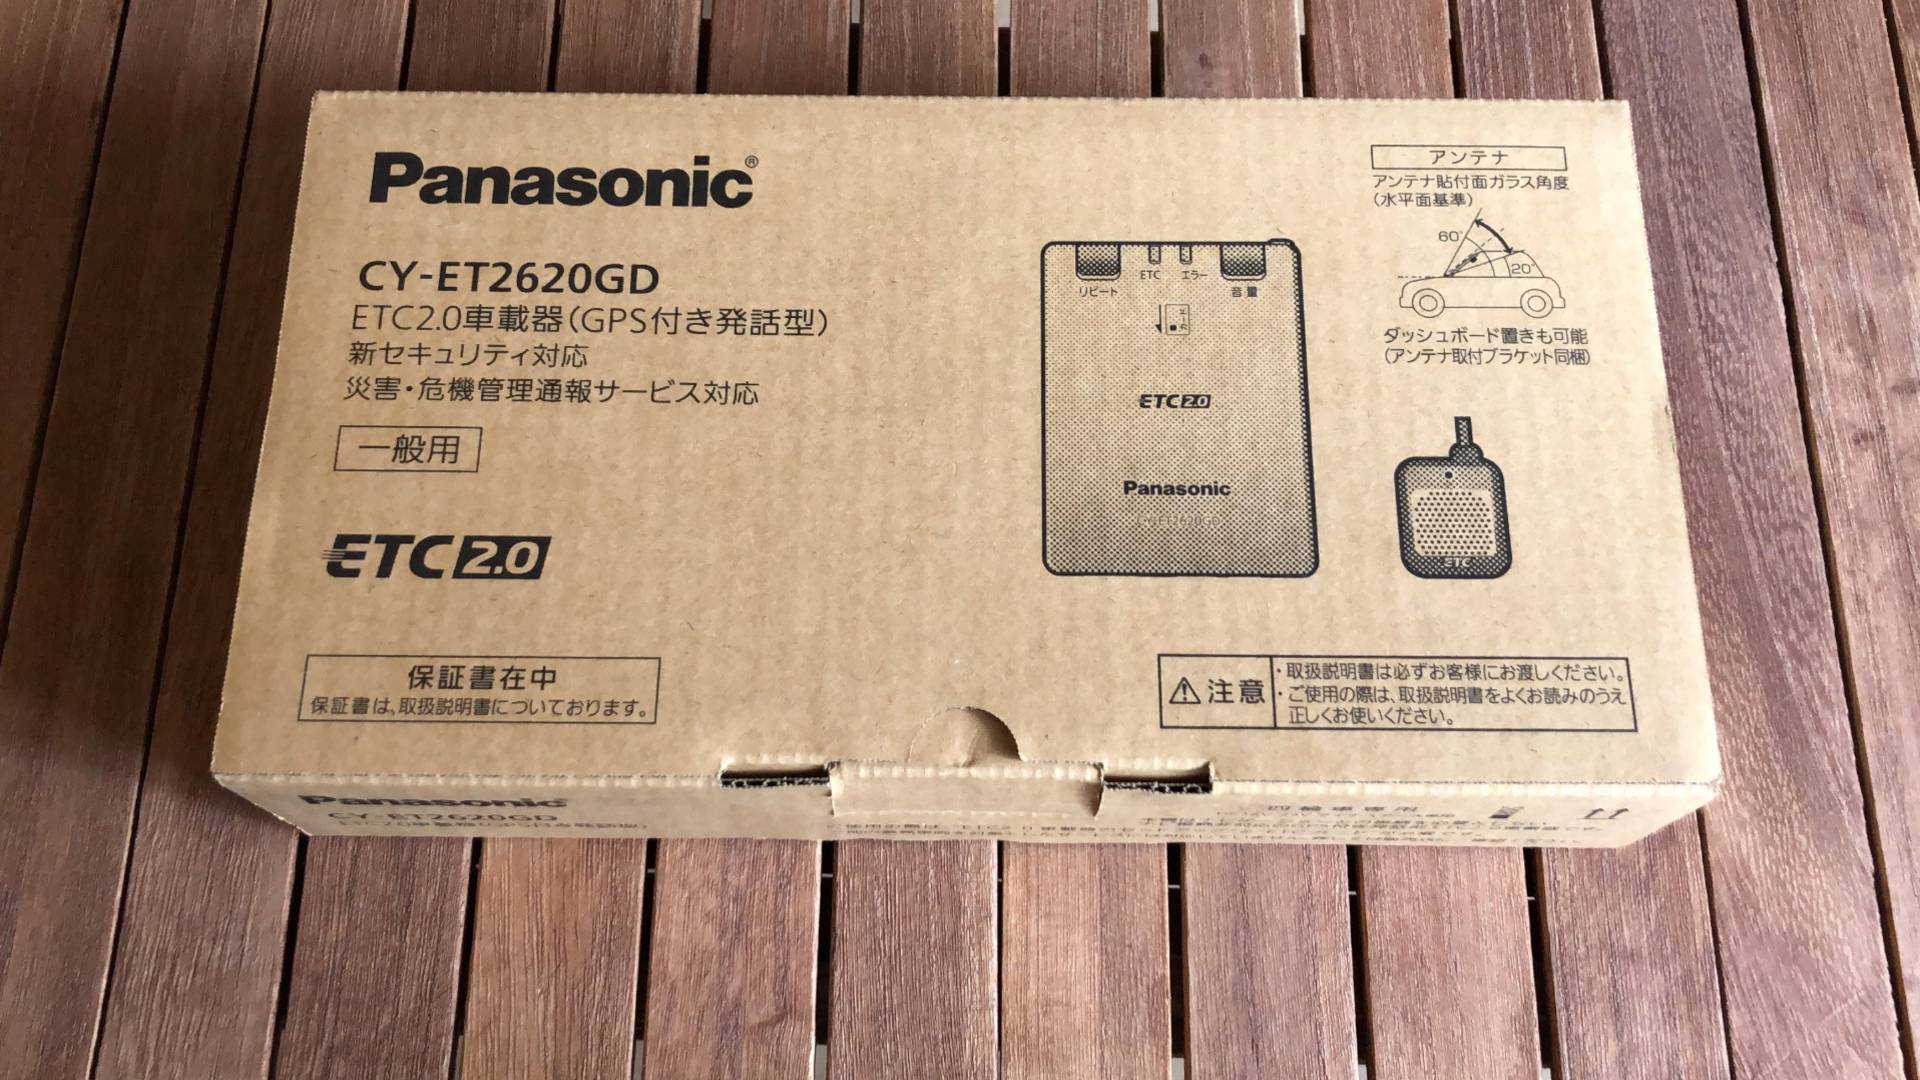 【軽バンカスタマイズ3】Panasonic CY-ET2620GD 新セキュリティ対応アンテナ一体型ETC2.0をエブリイに取り付けました。